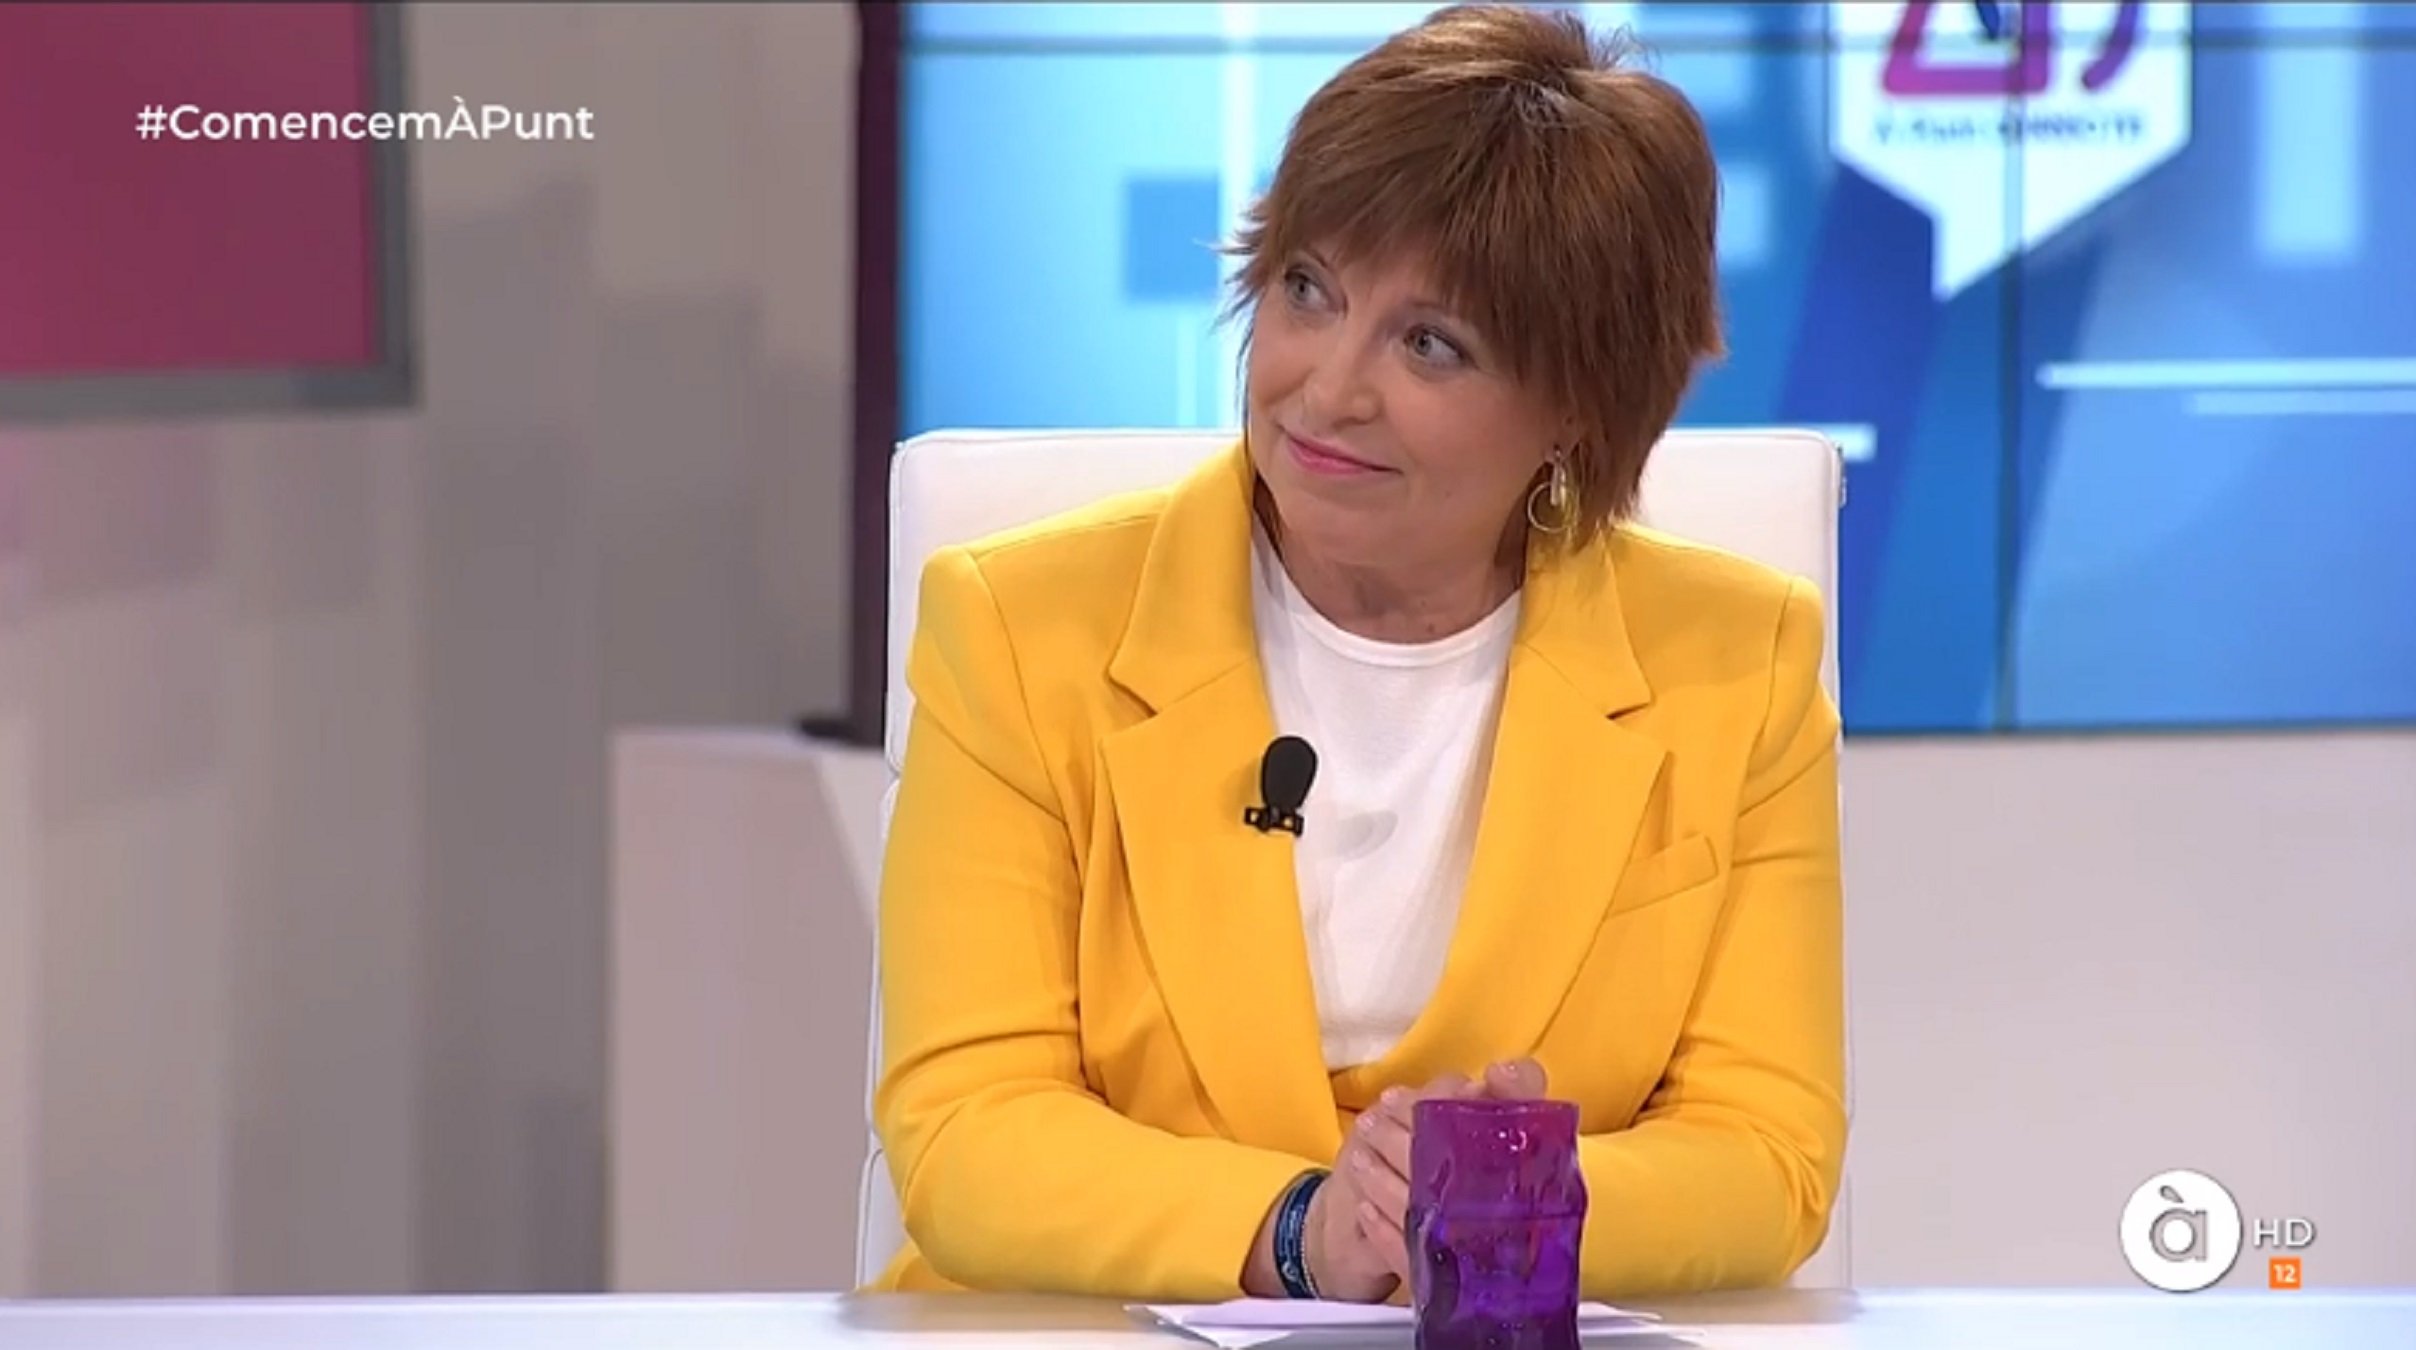 Demanen la dimissió de la directora de la TV valenciana per vestir de groc